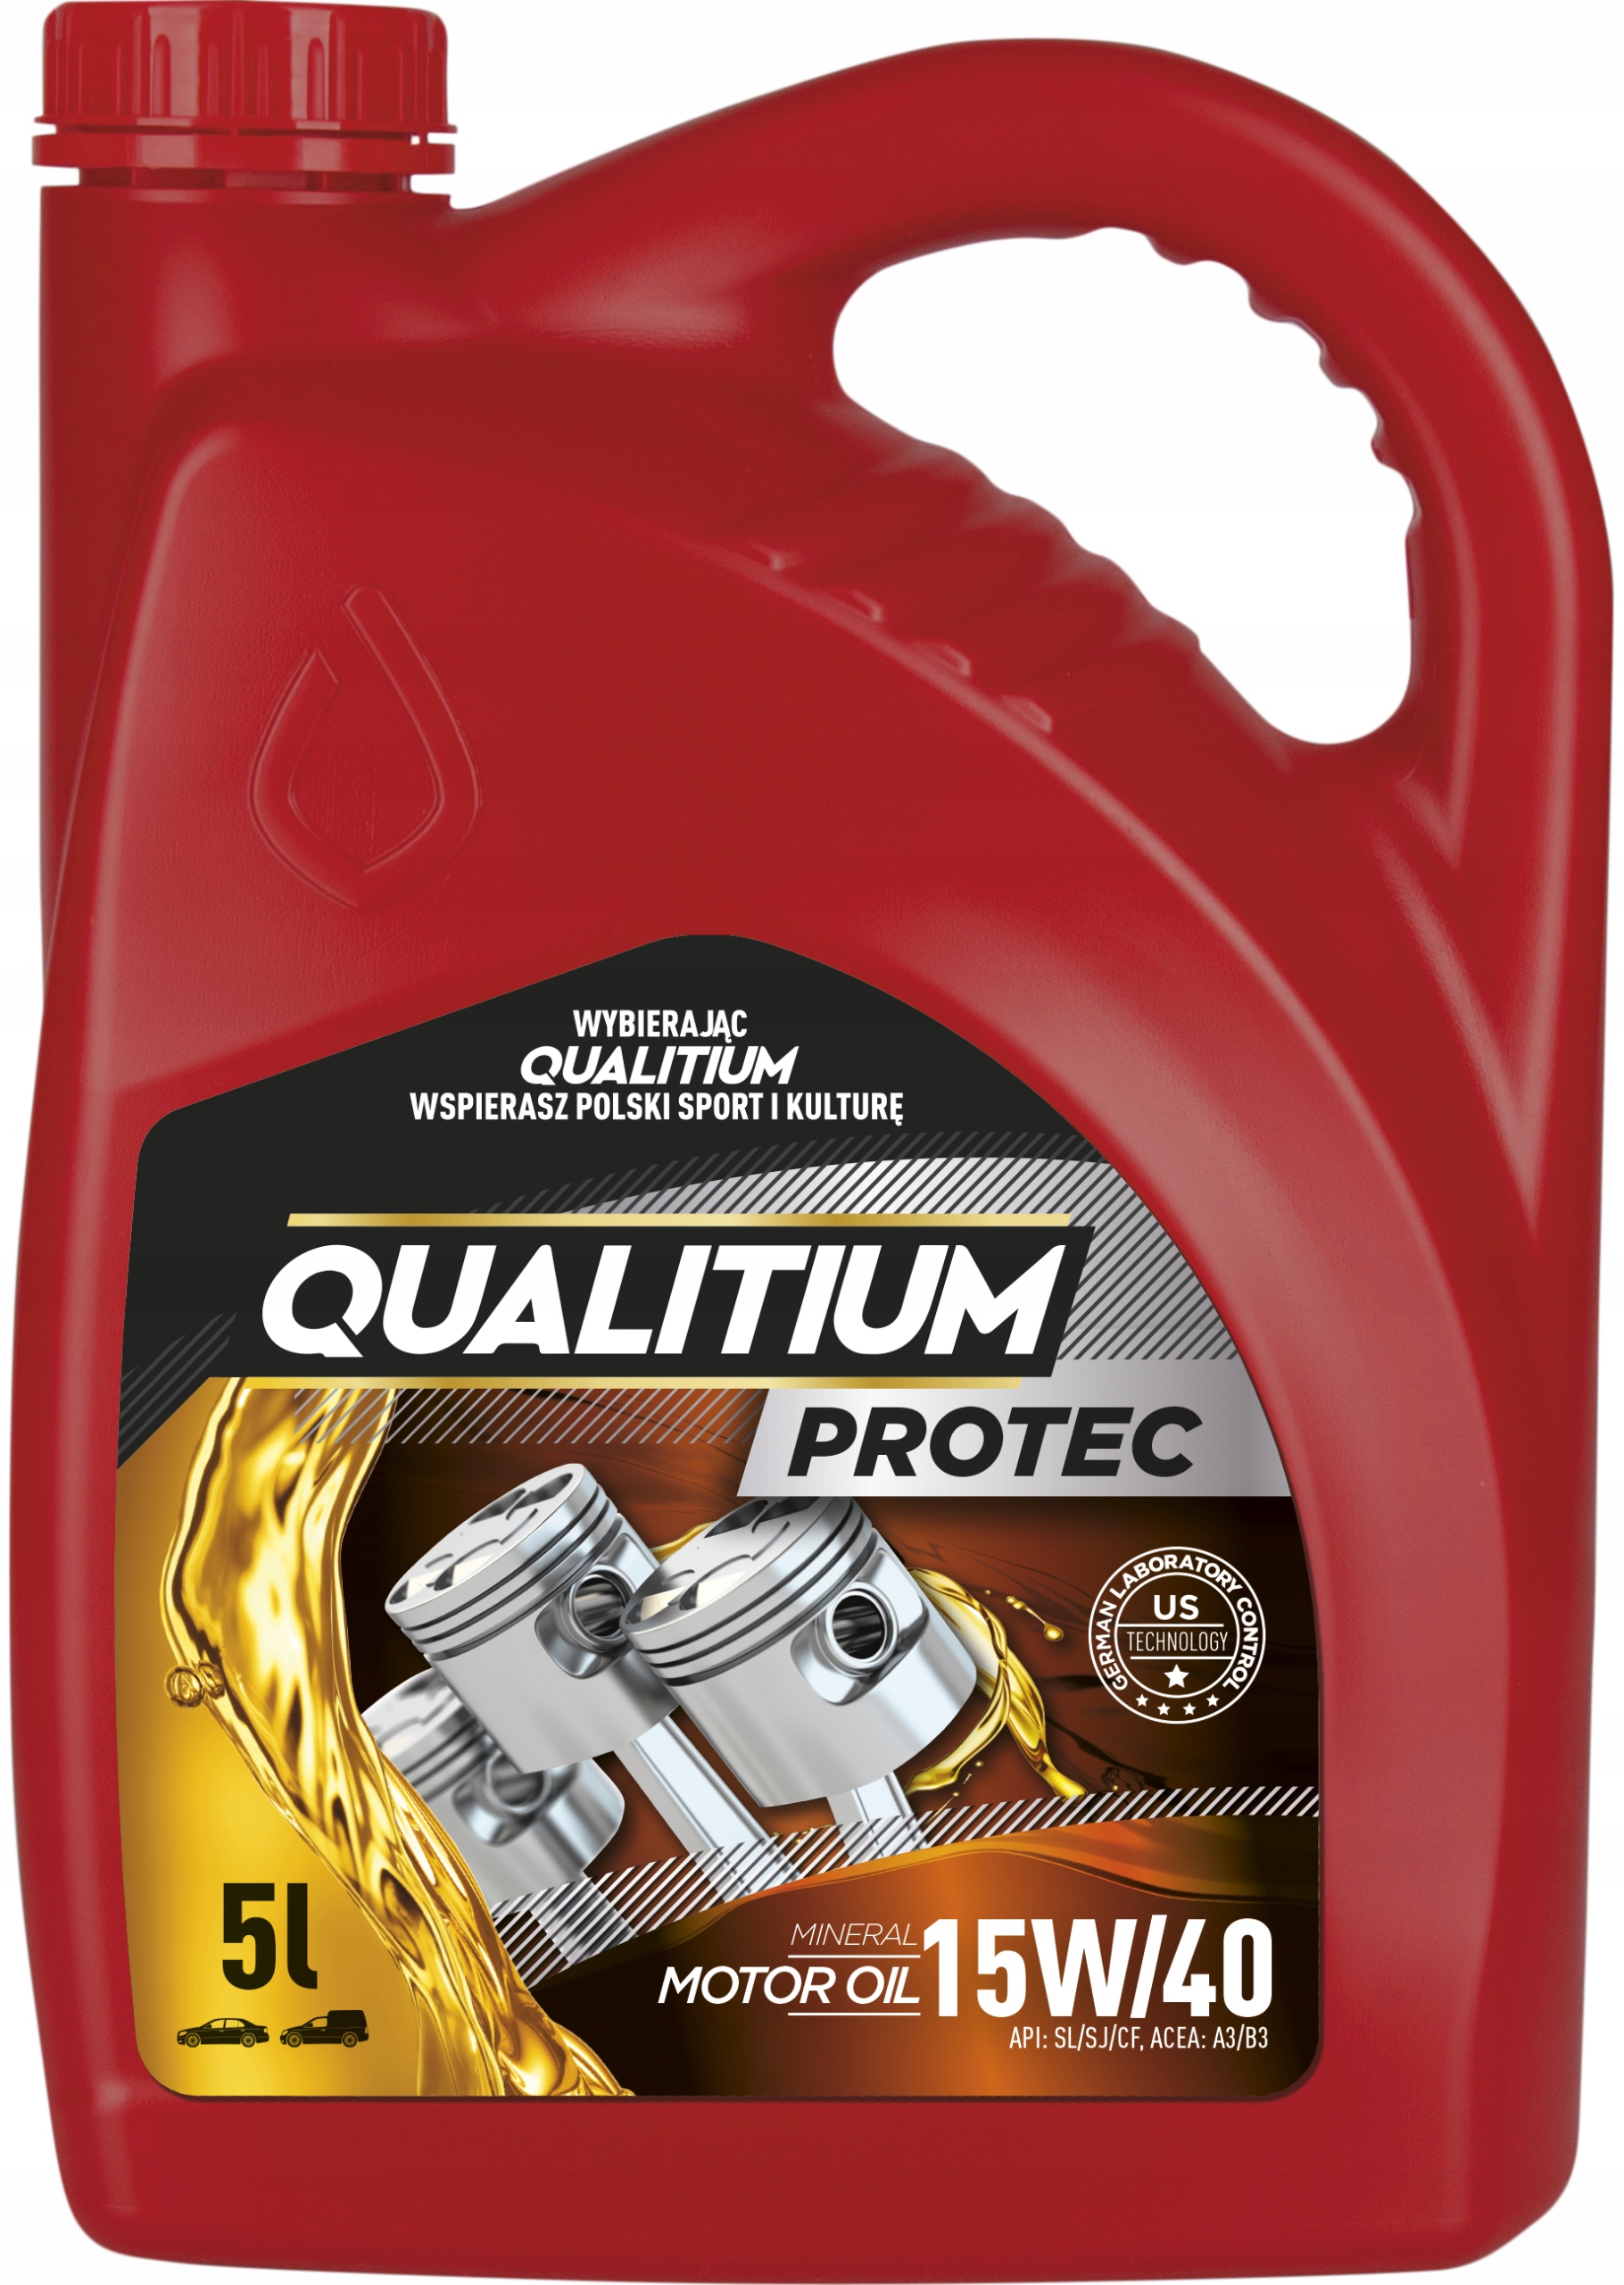 Минеральное масло QUALITIUM PROTEC 15W40 комплект 3X5L